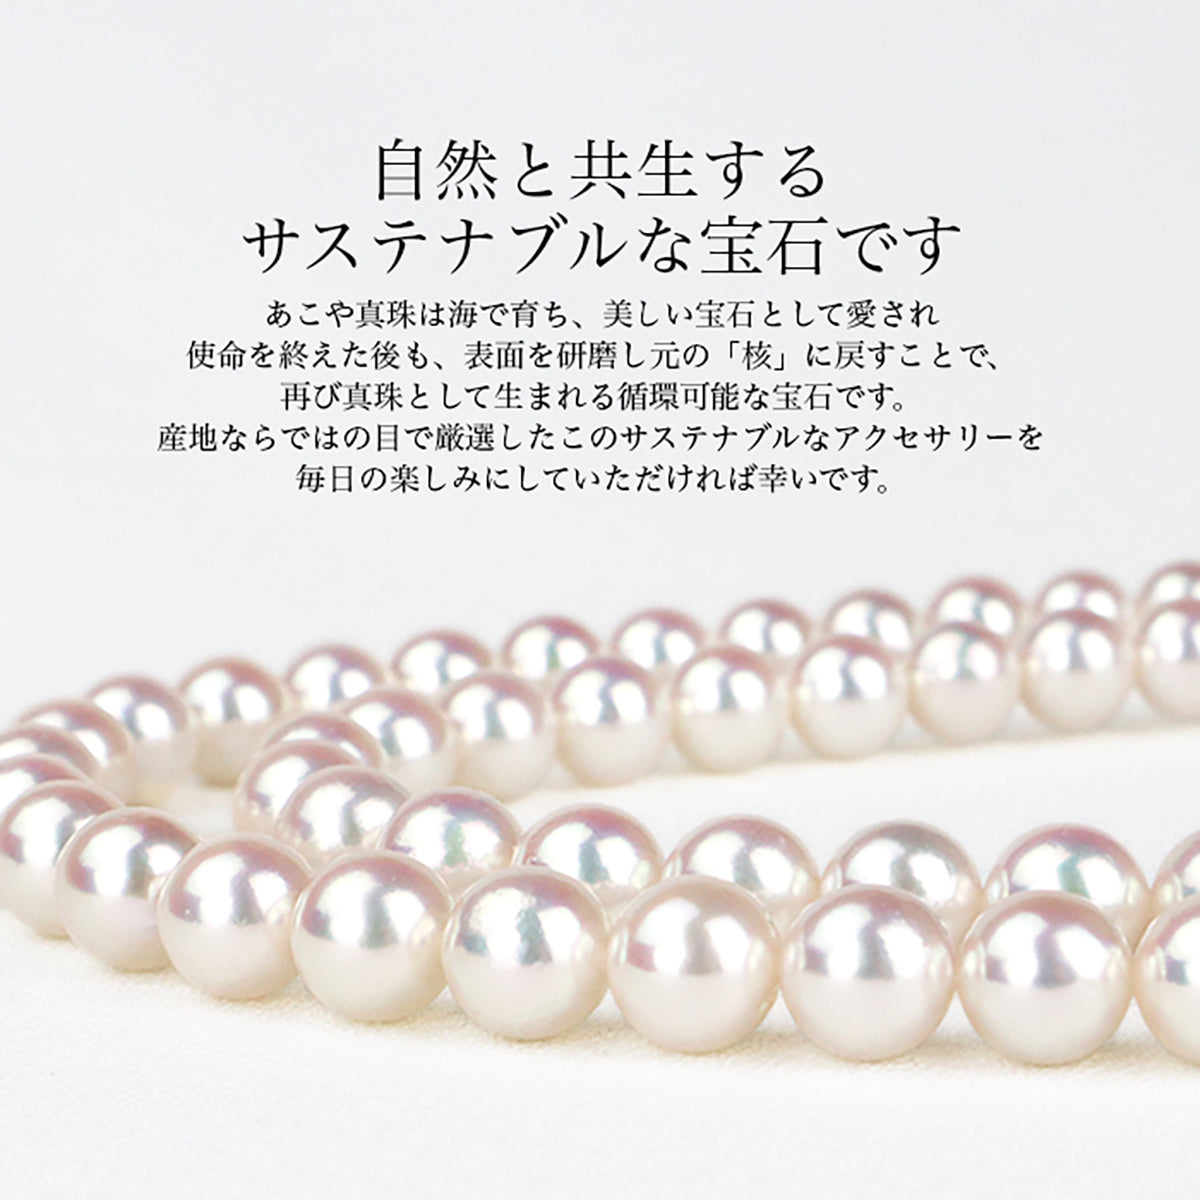 珍珠 5 珠手链站白色 7.0-7.5 毫米 Akoya 珍珠 (3919)